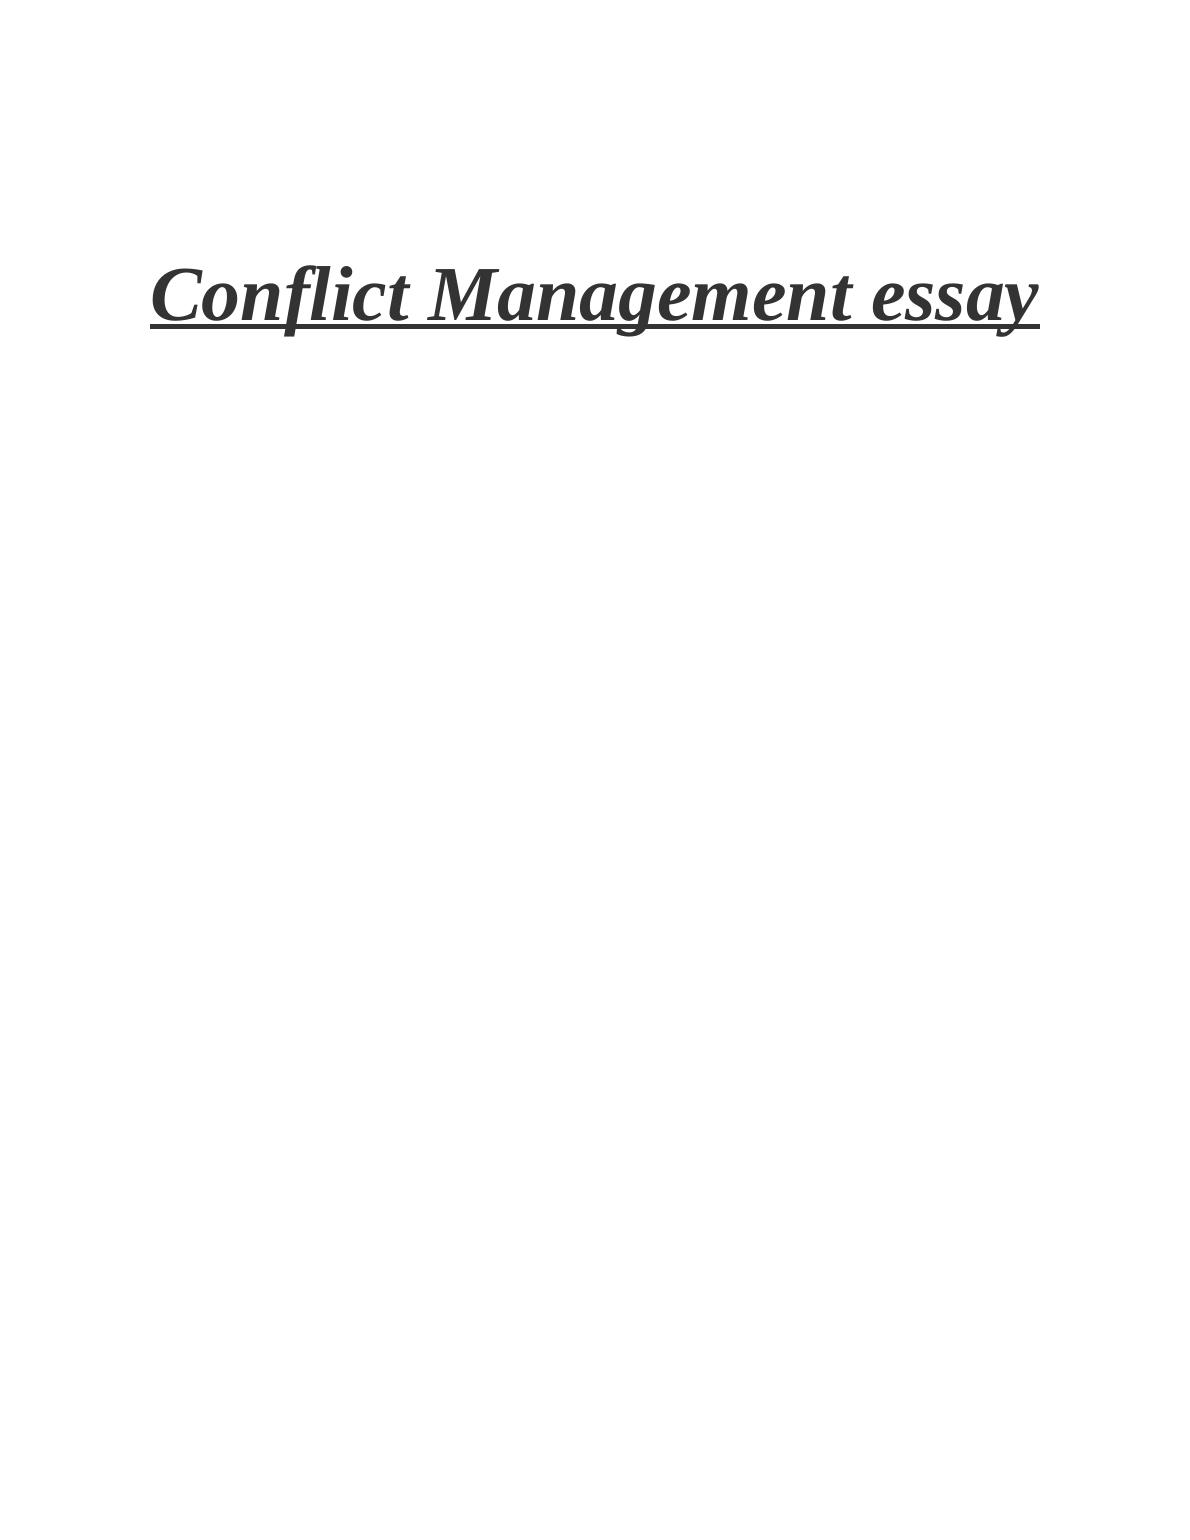 managing conflict essay